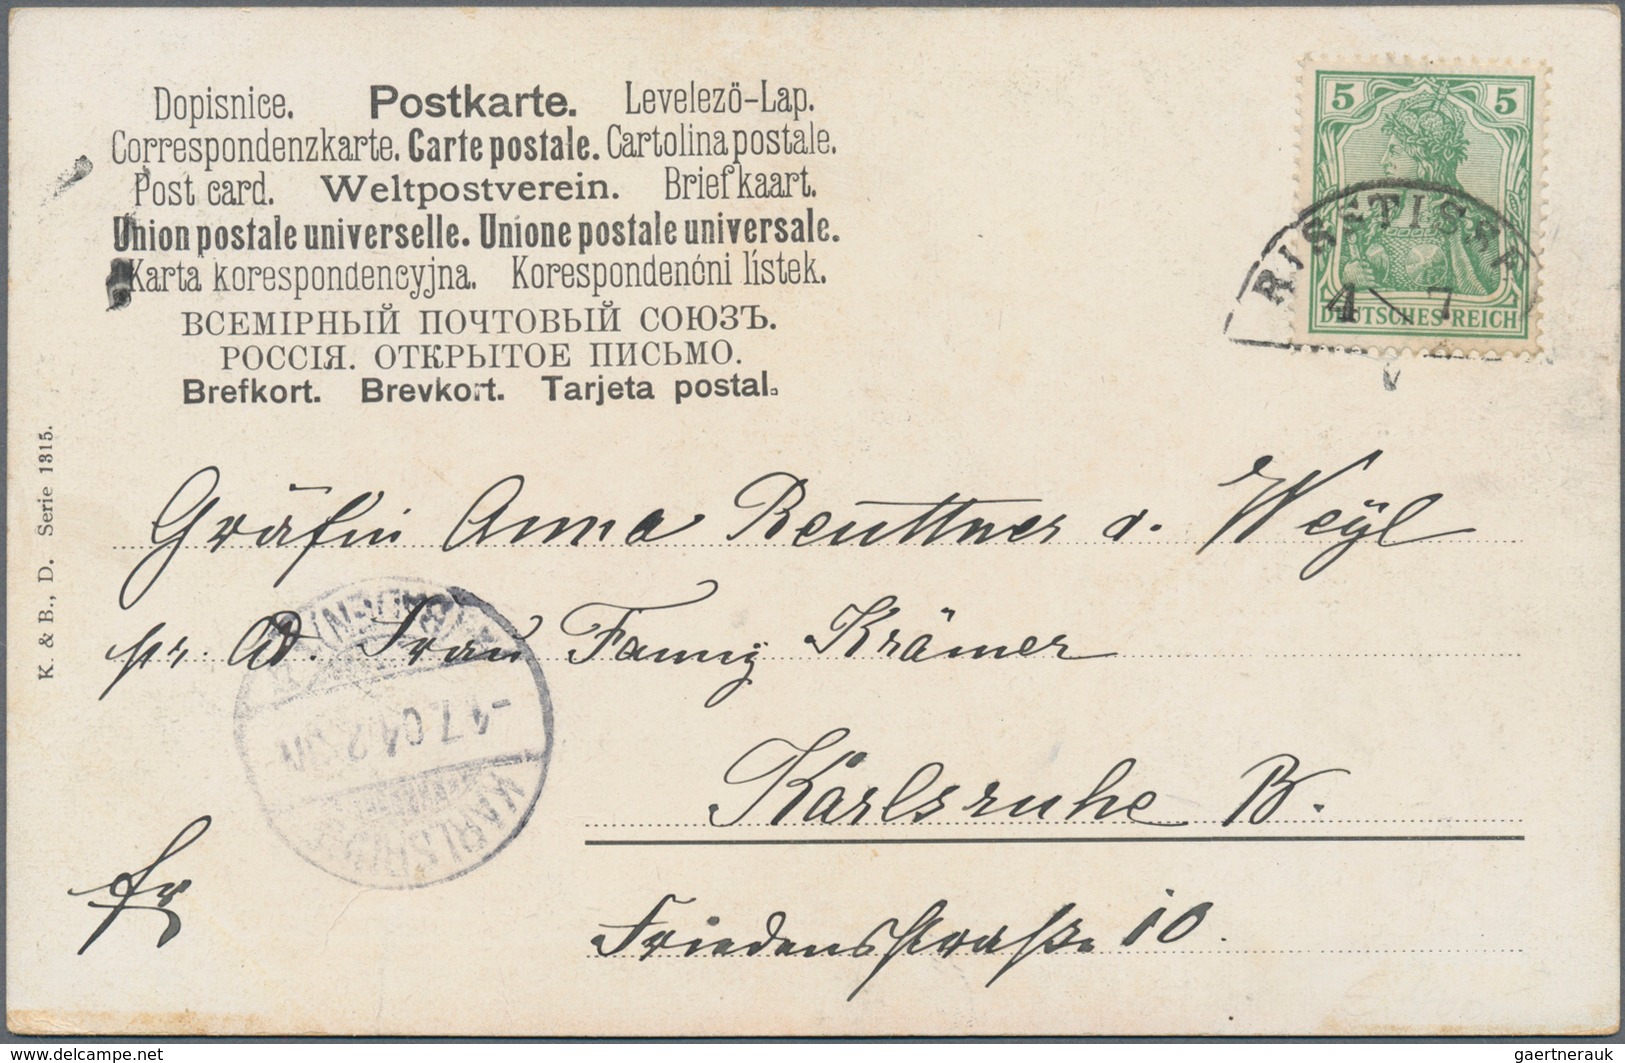 Altdeutschland und Deutsches Reich: 1820/1945 ca., gehaltvoller Posten mit ca.160 Belegen, dabei vie